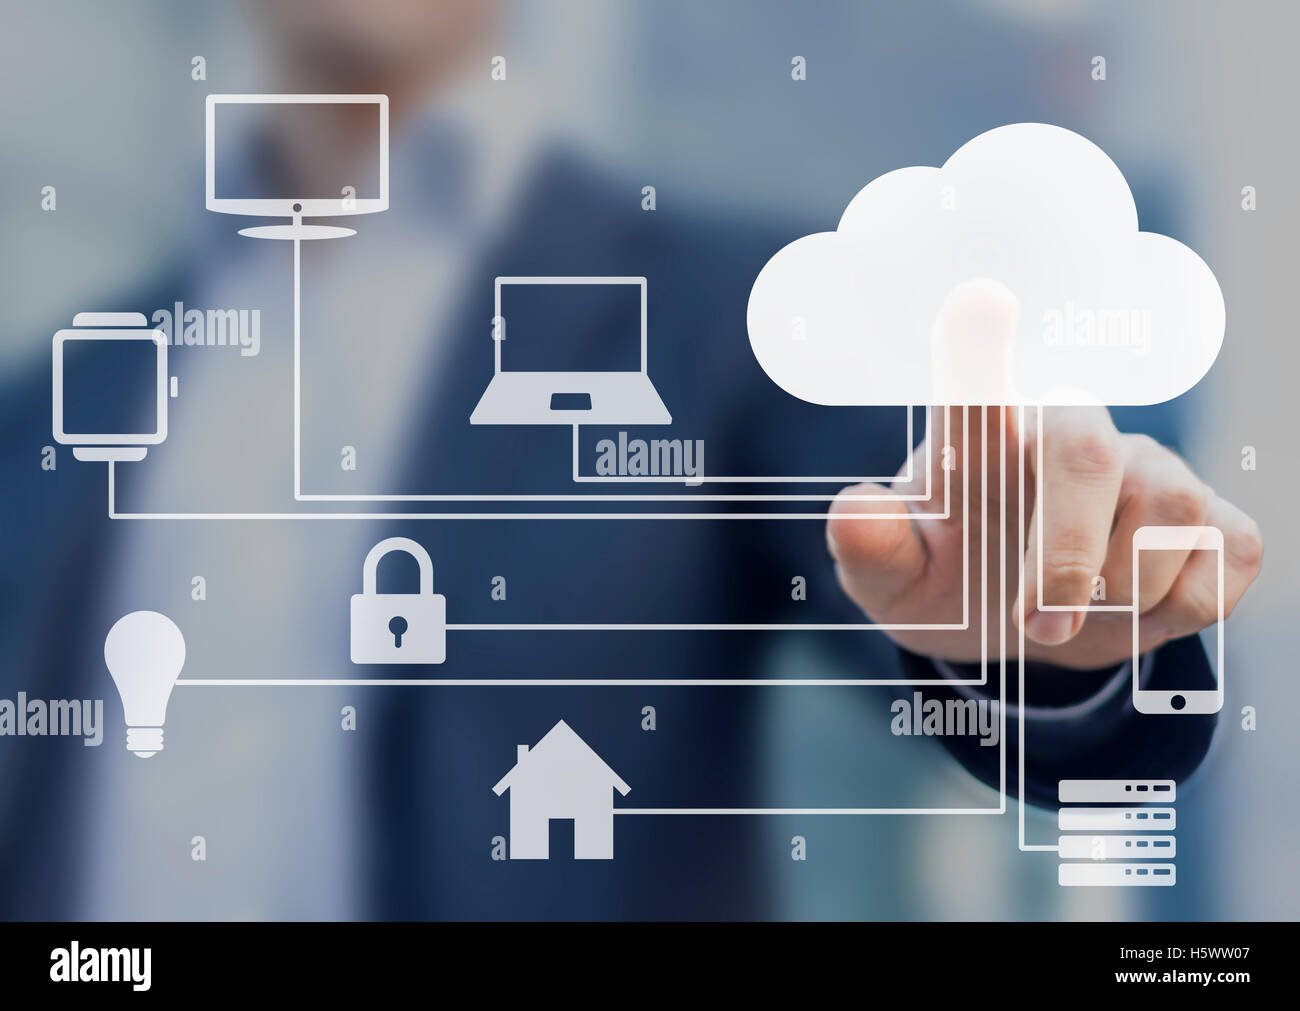 Businessman touching un nuage relié à plusieurs objets sur un écran virtuel, concept sur internet des objets Banque D'Images